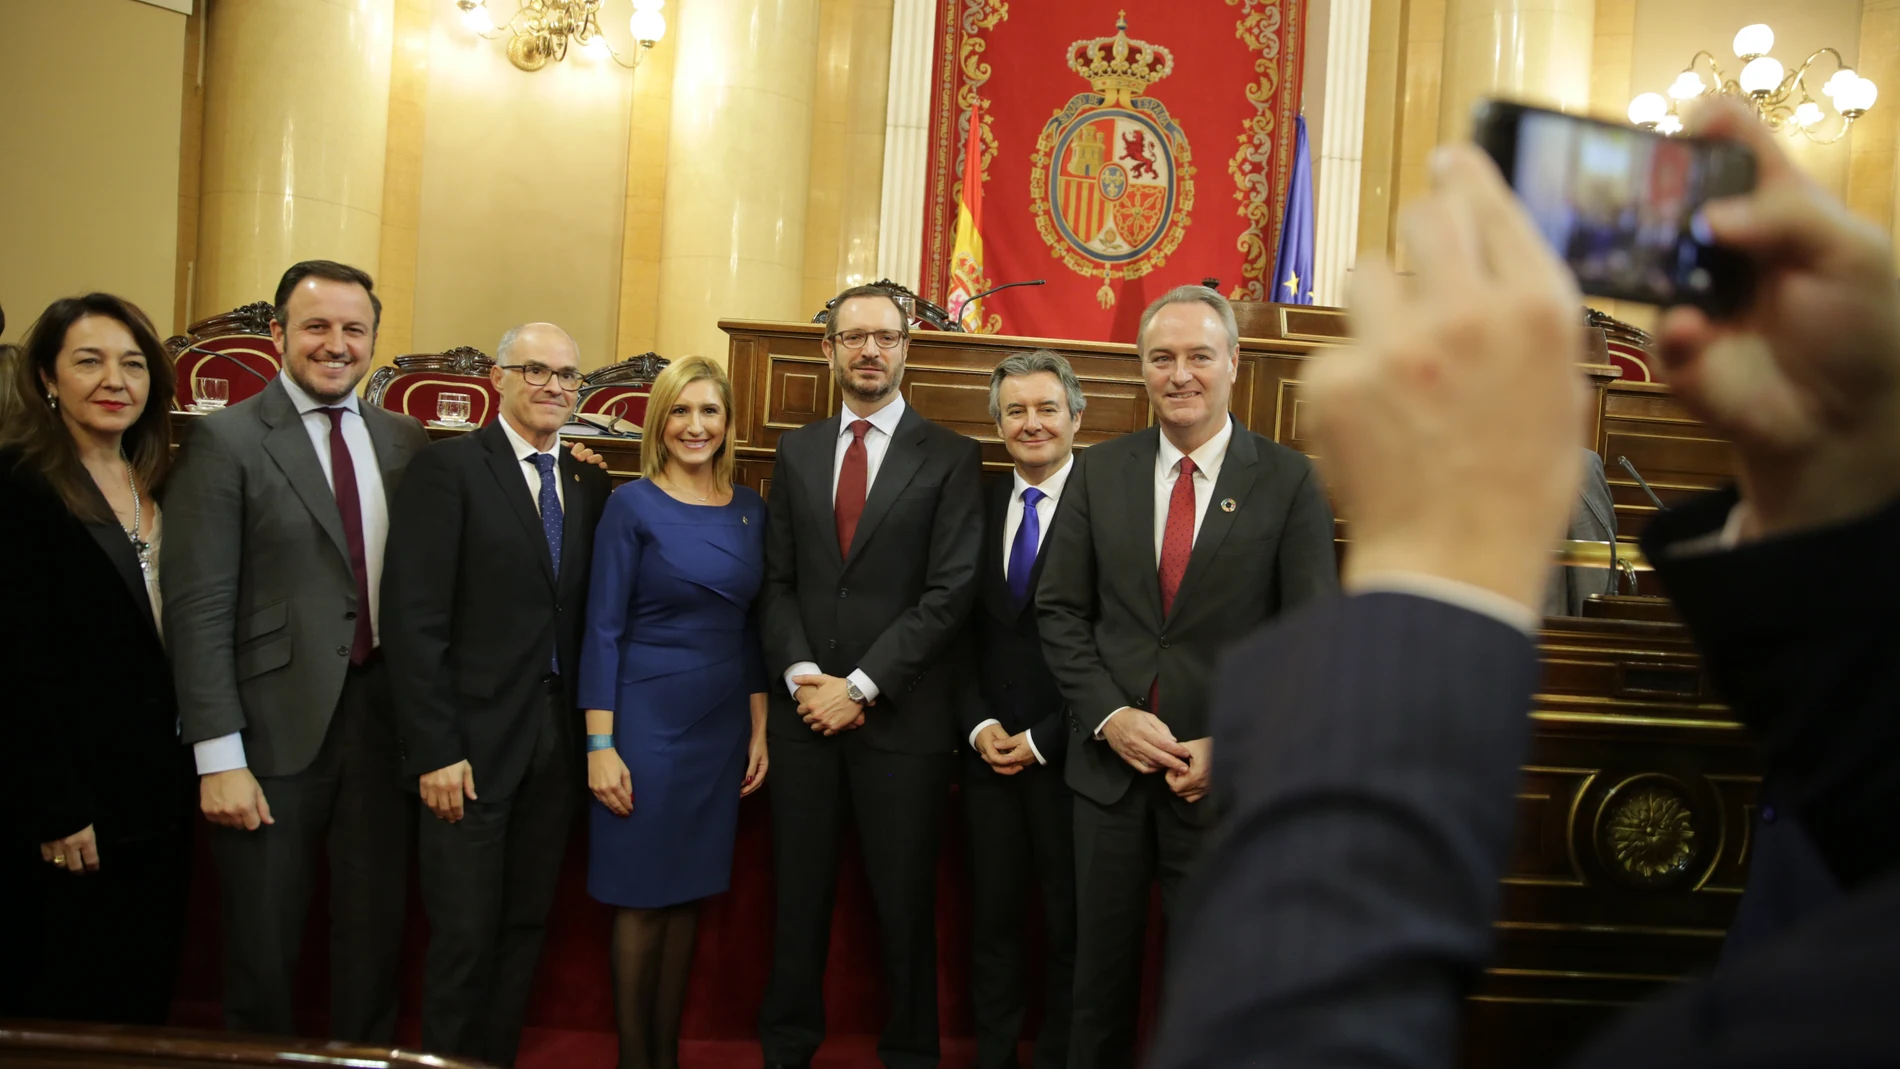 Senadores del PP posan hoy para una foto en el Senado. Foto: Cipriano Pastrano.